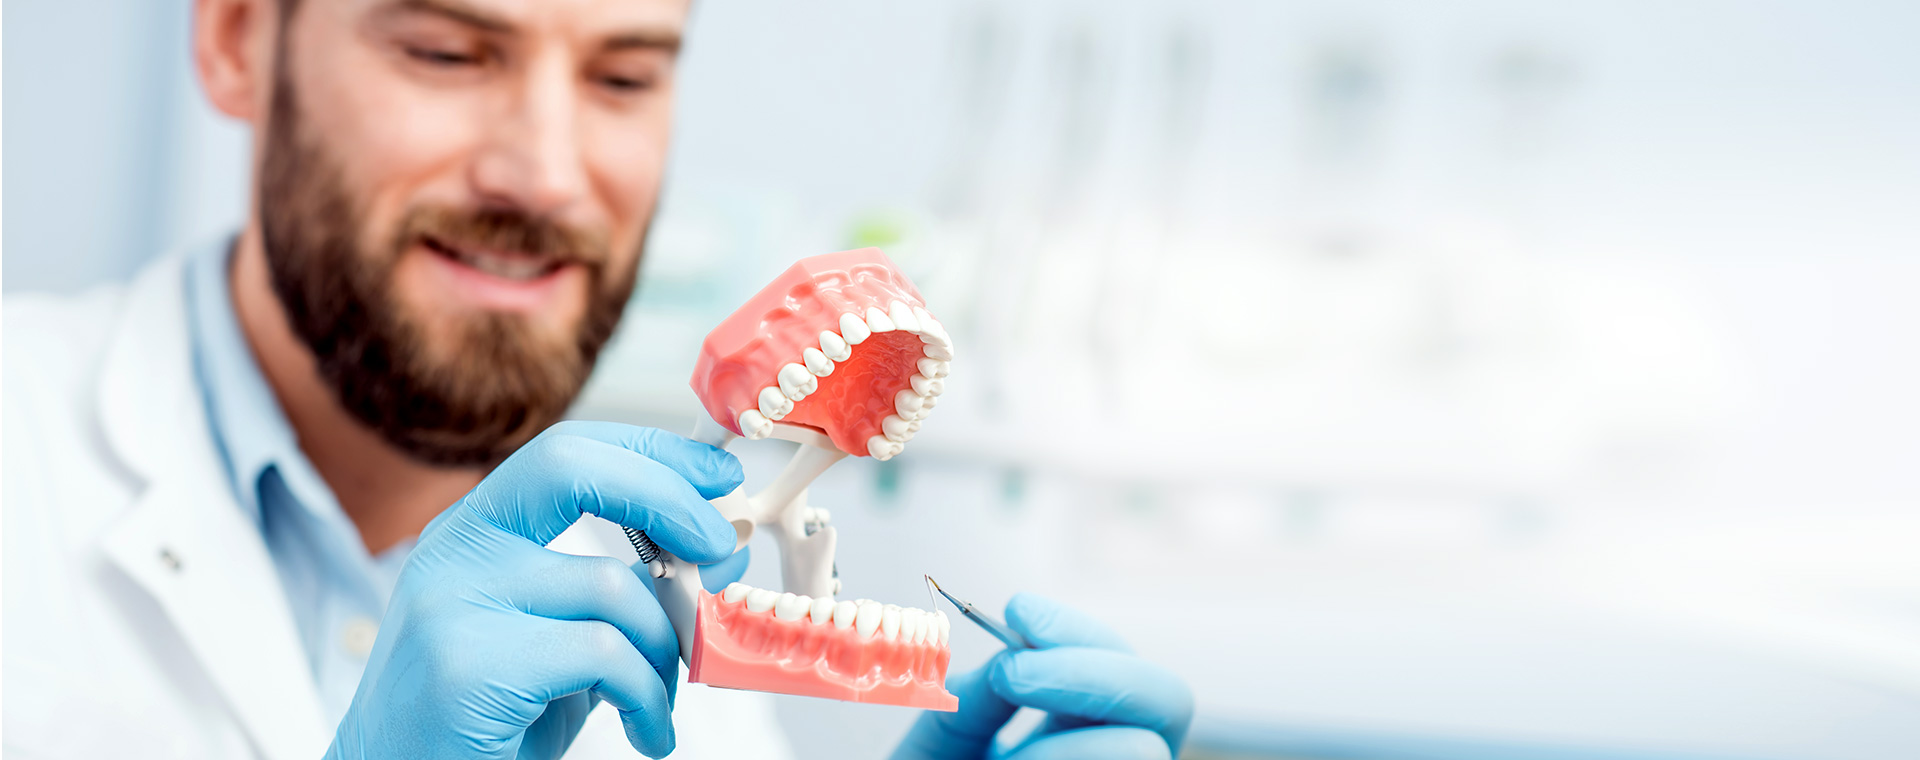 Протезирование зубов инвалидам 3 группы. Зубные протезы стоматология. Прием у стоматолога. Гигиена протезов.